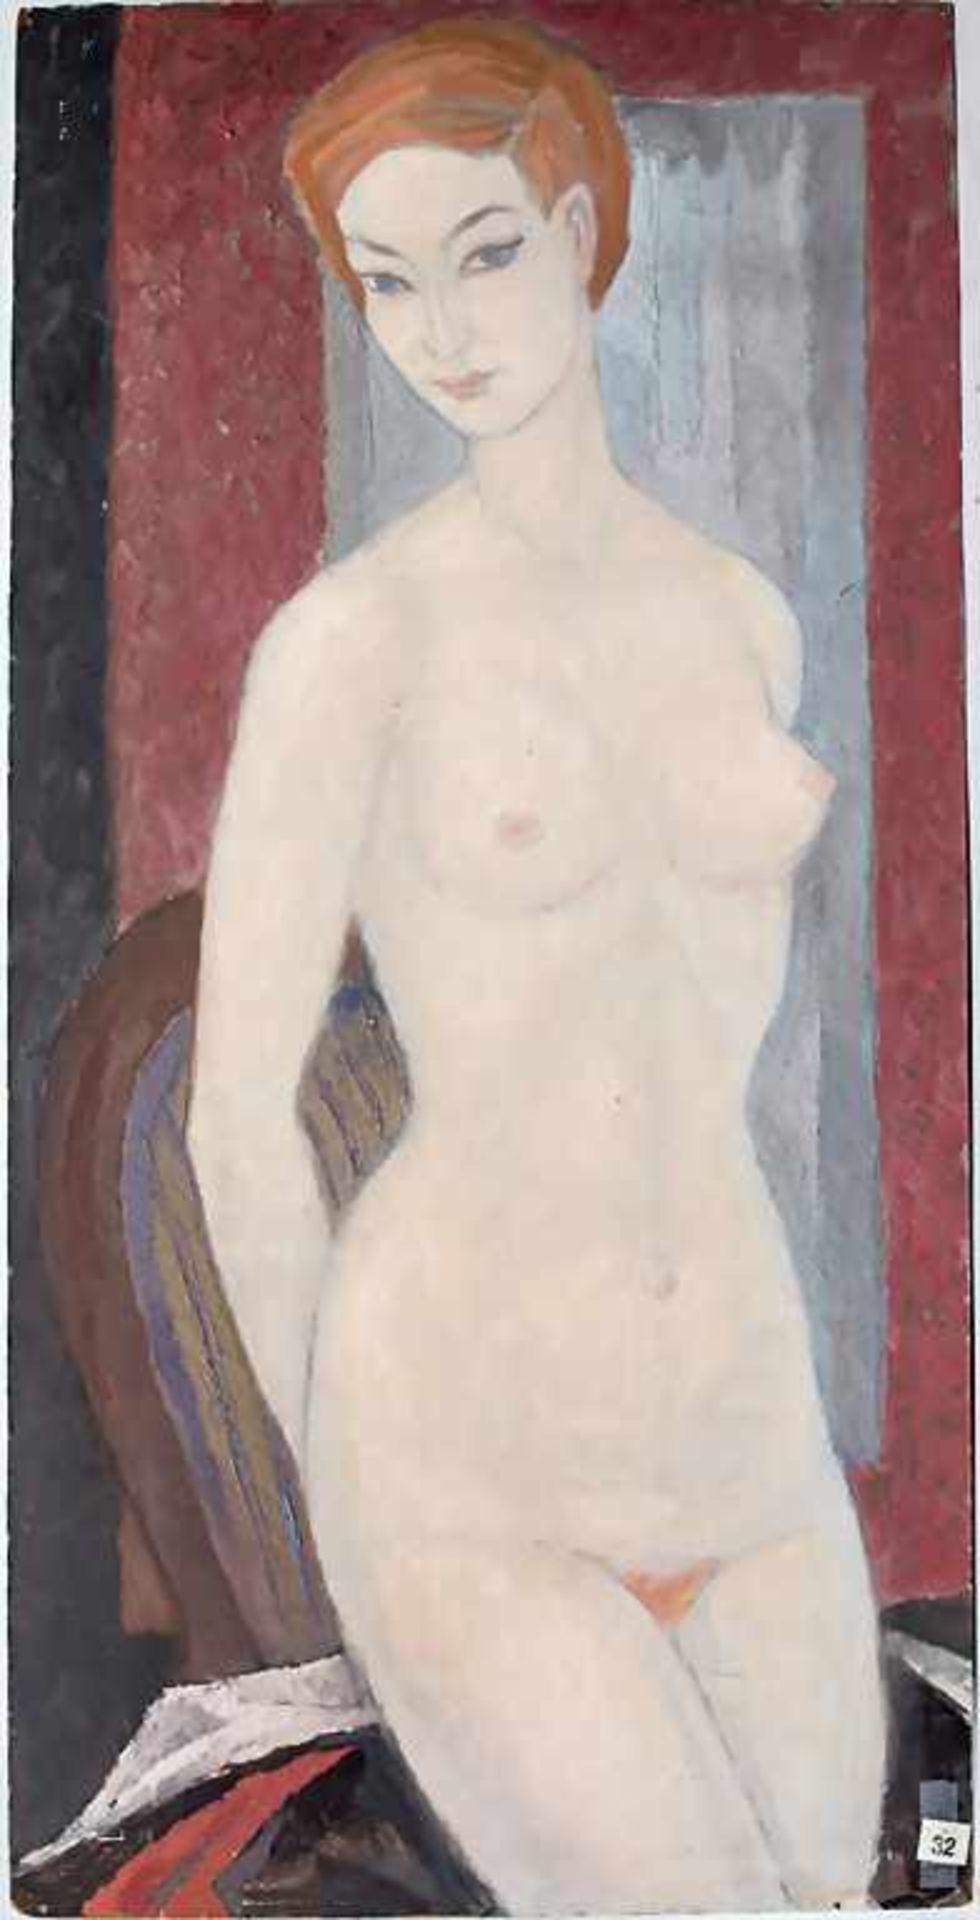 Hardy Schneider-Sato (1919-2002), 'Rothaariger weiblicher Akt' / 'A red-haired female nude'